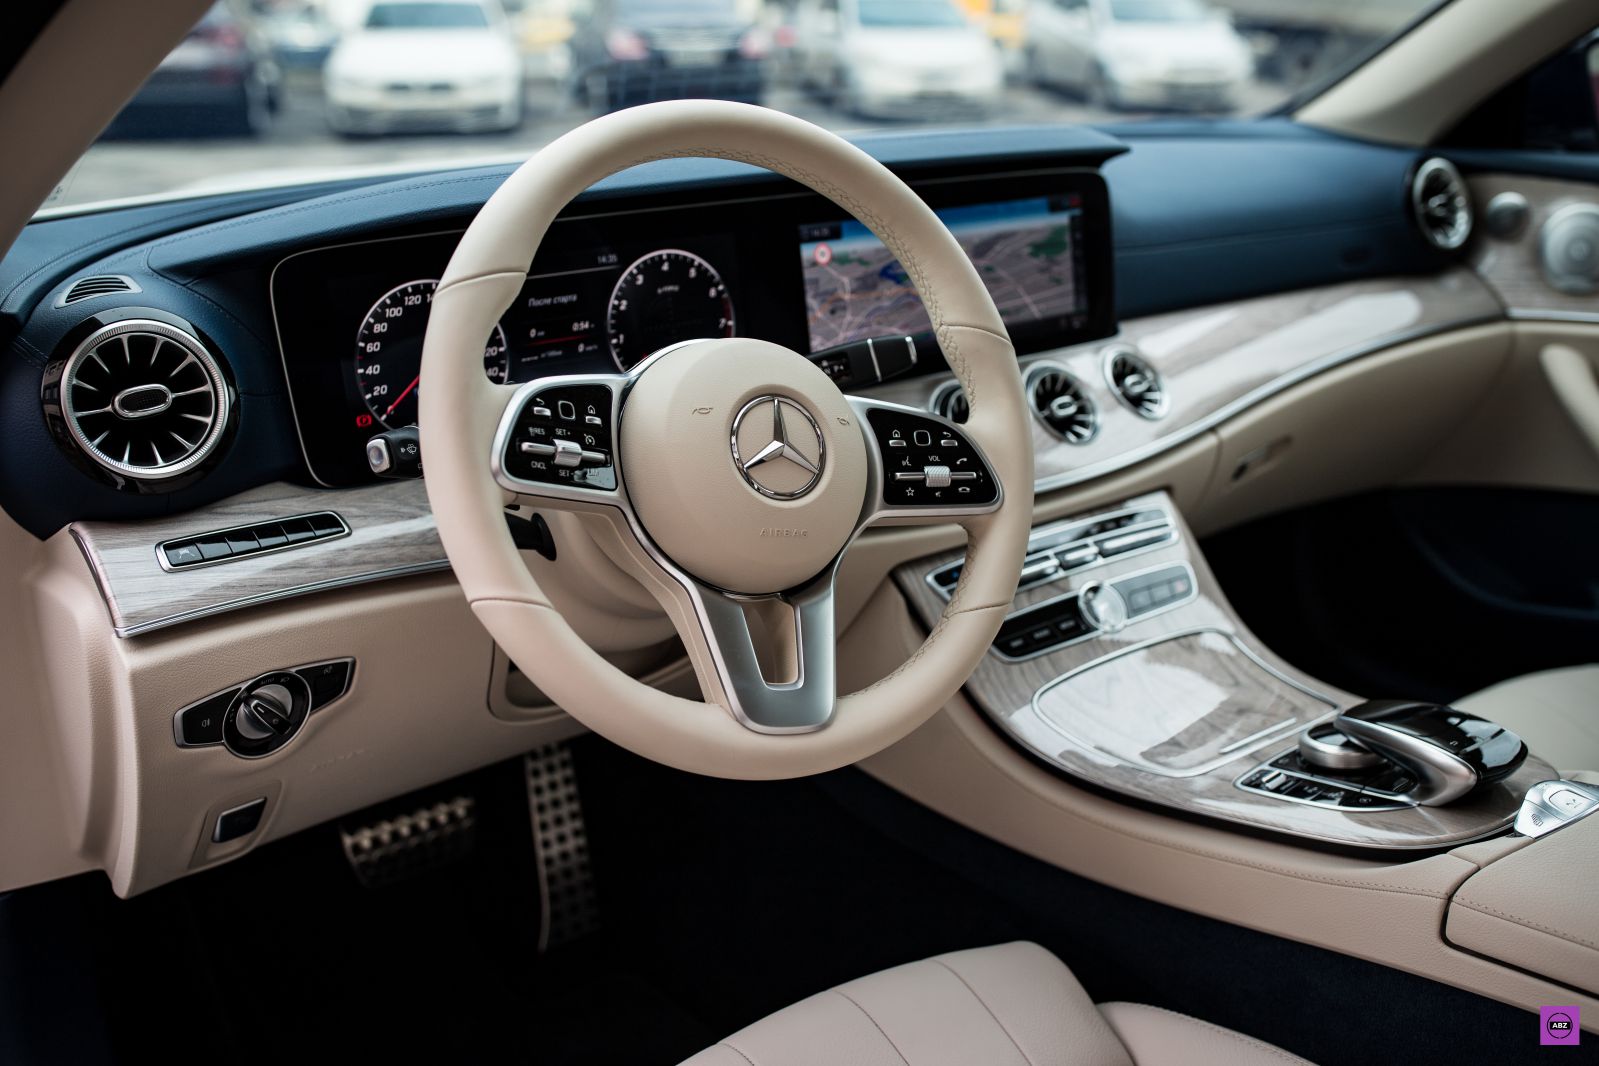 Фото Как защитить абсолютно белый Mercedes-Benz E Class кабриолет